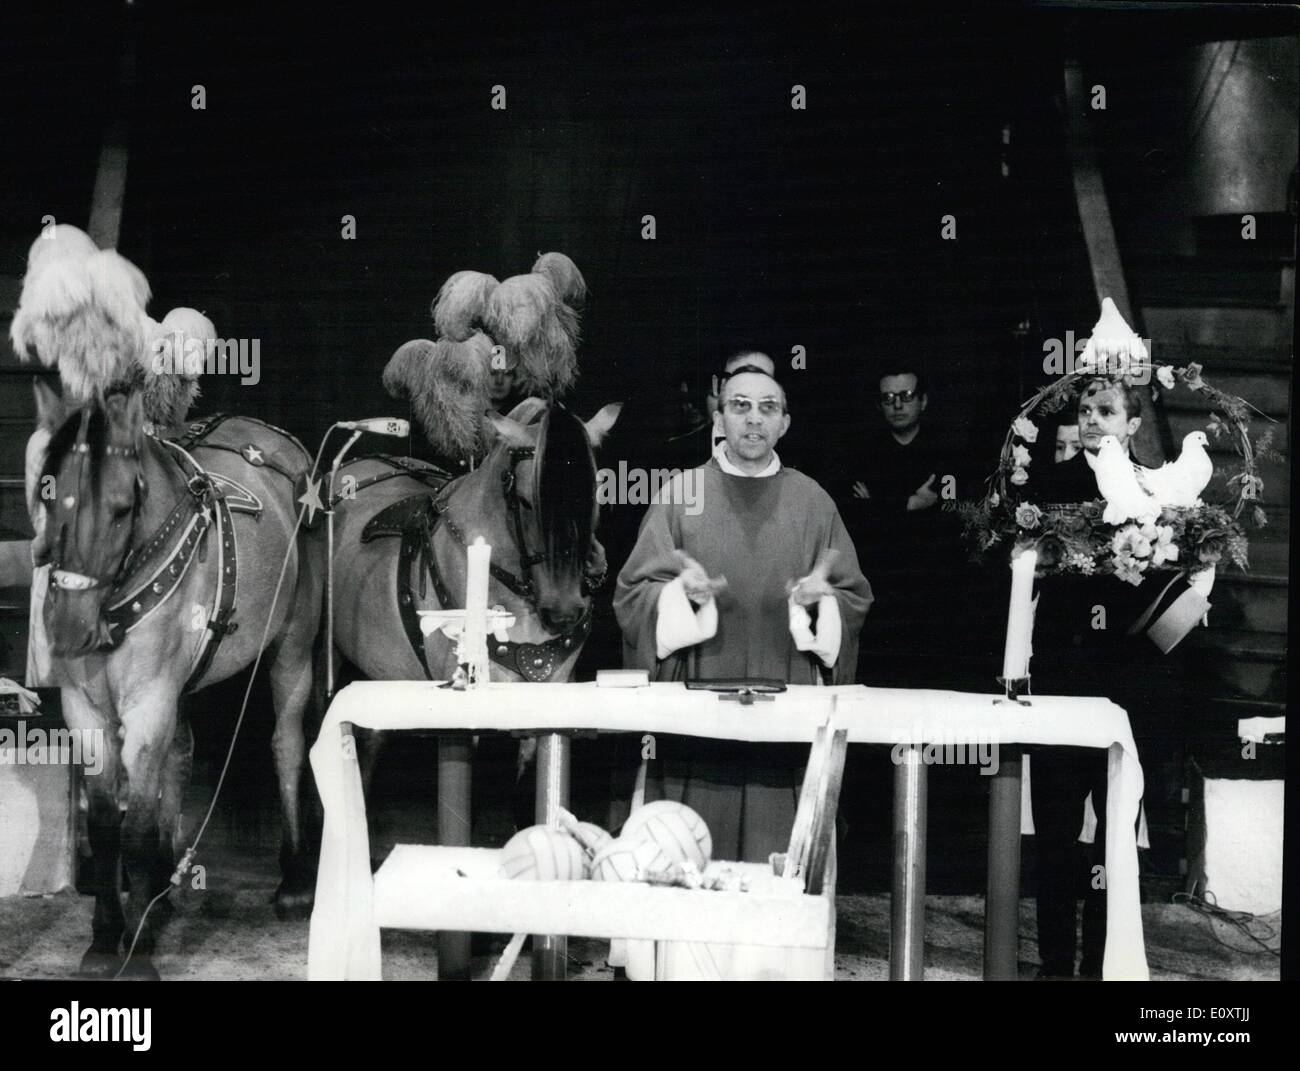 11 novembre 1967 - Cirque jongleurs assister à la Messe : une messe spéciale pour les artistes de cirque a eu lieu à Paris Cirque d'hiver à l'occasion de la Semaine du Cirque. La photo montre la Gypsy Bouglione, fille du célèbre Iwner du cirque, de la jonglerie comme elle l'objet d'un emprunt Le ''jongleur de Notre Dame Banque D'Images